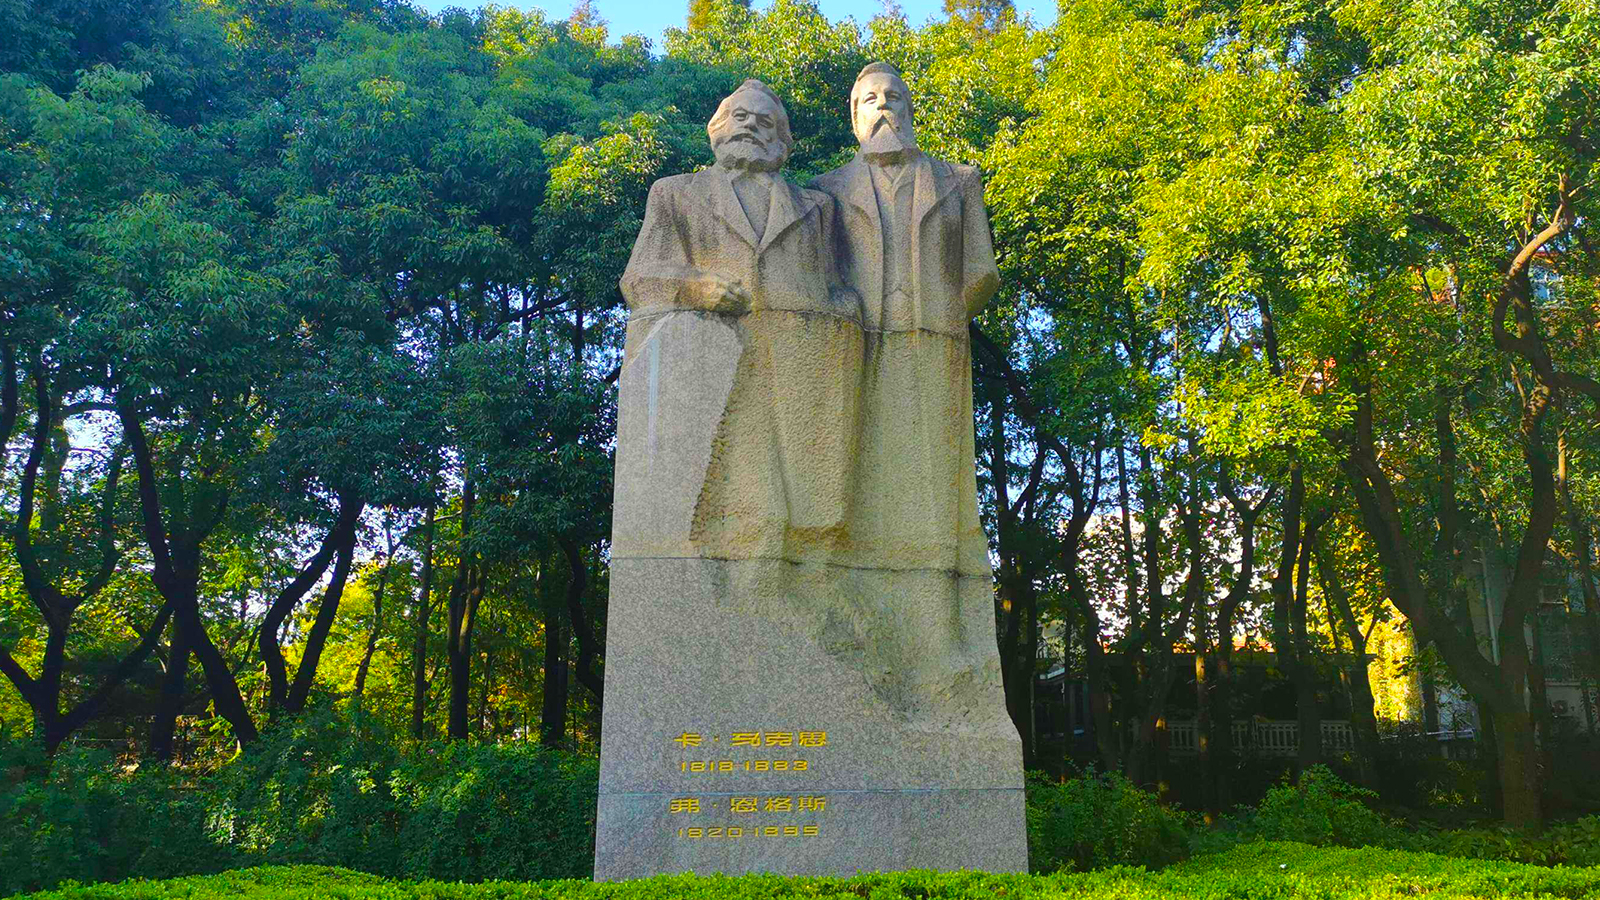 馬克思主題雕塑馬克思是德國的思想家、政治學家、哲學家、經濟學家、革命理論家、歷史學家和社會學家。